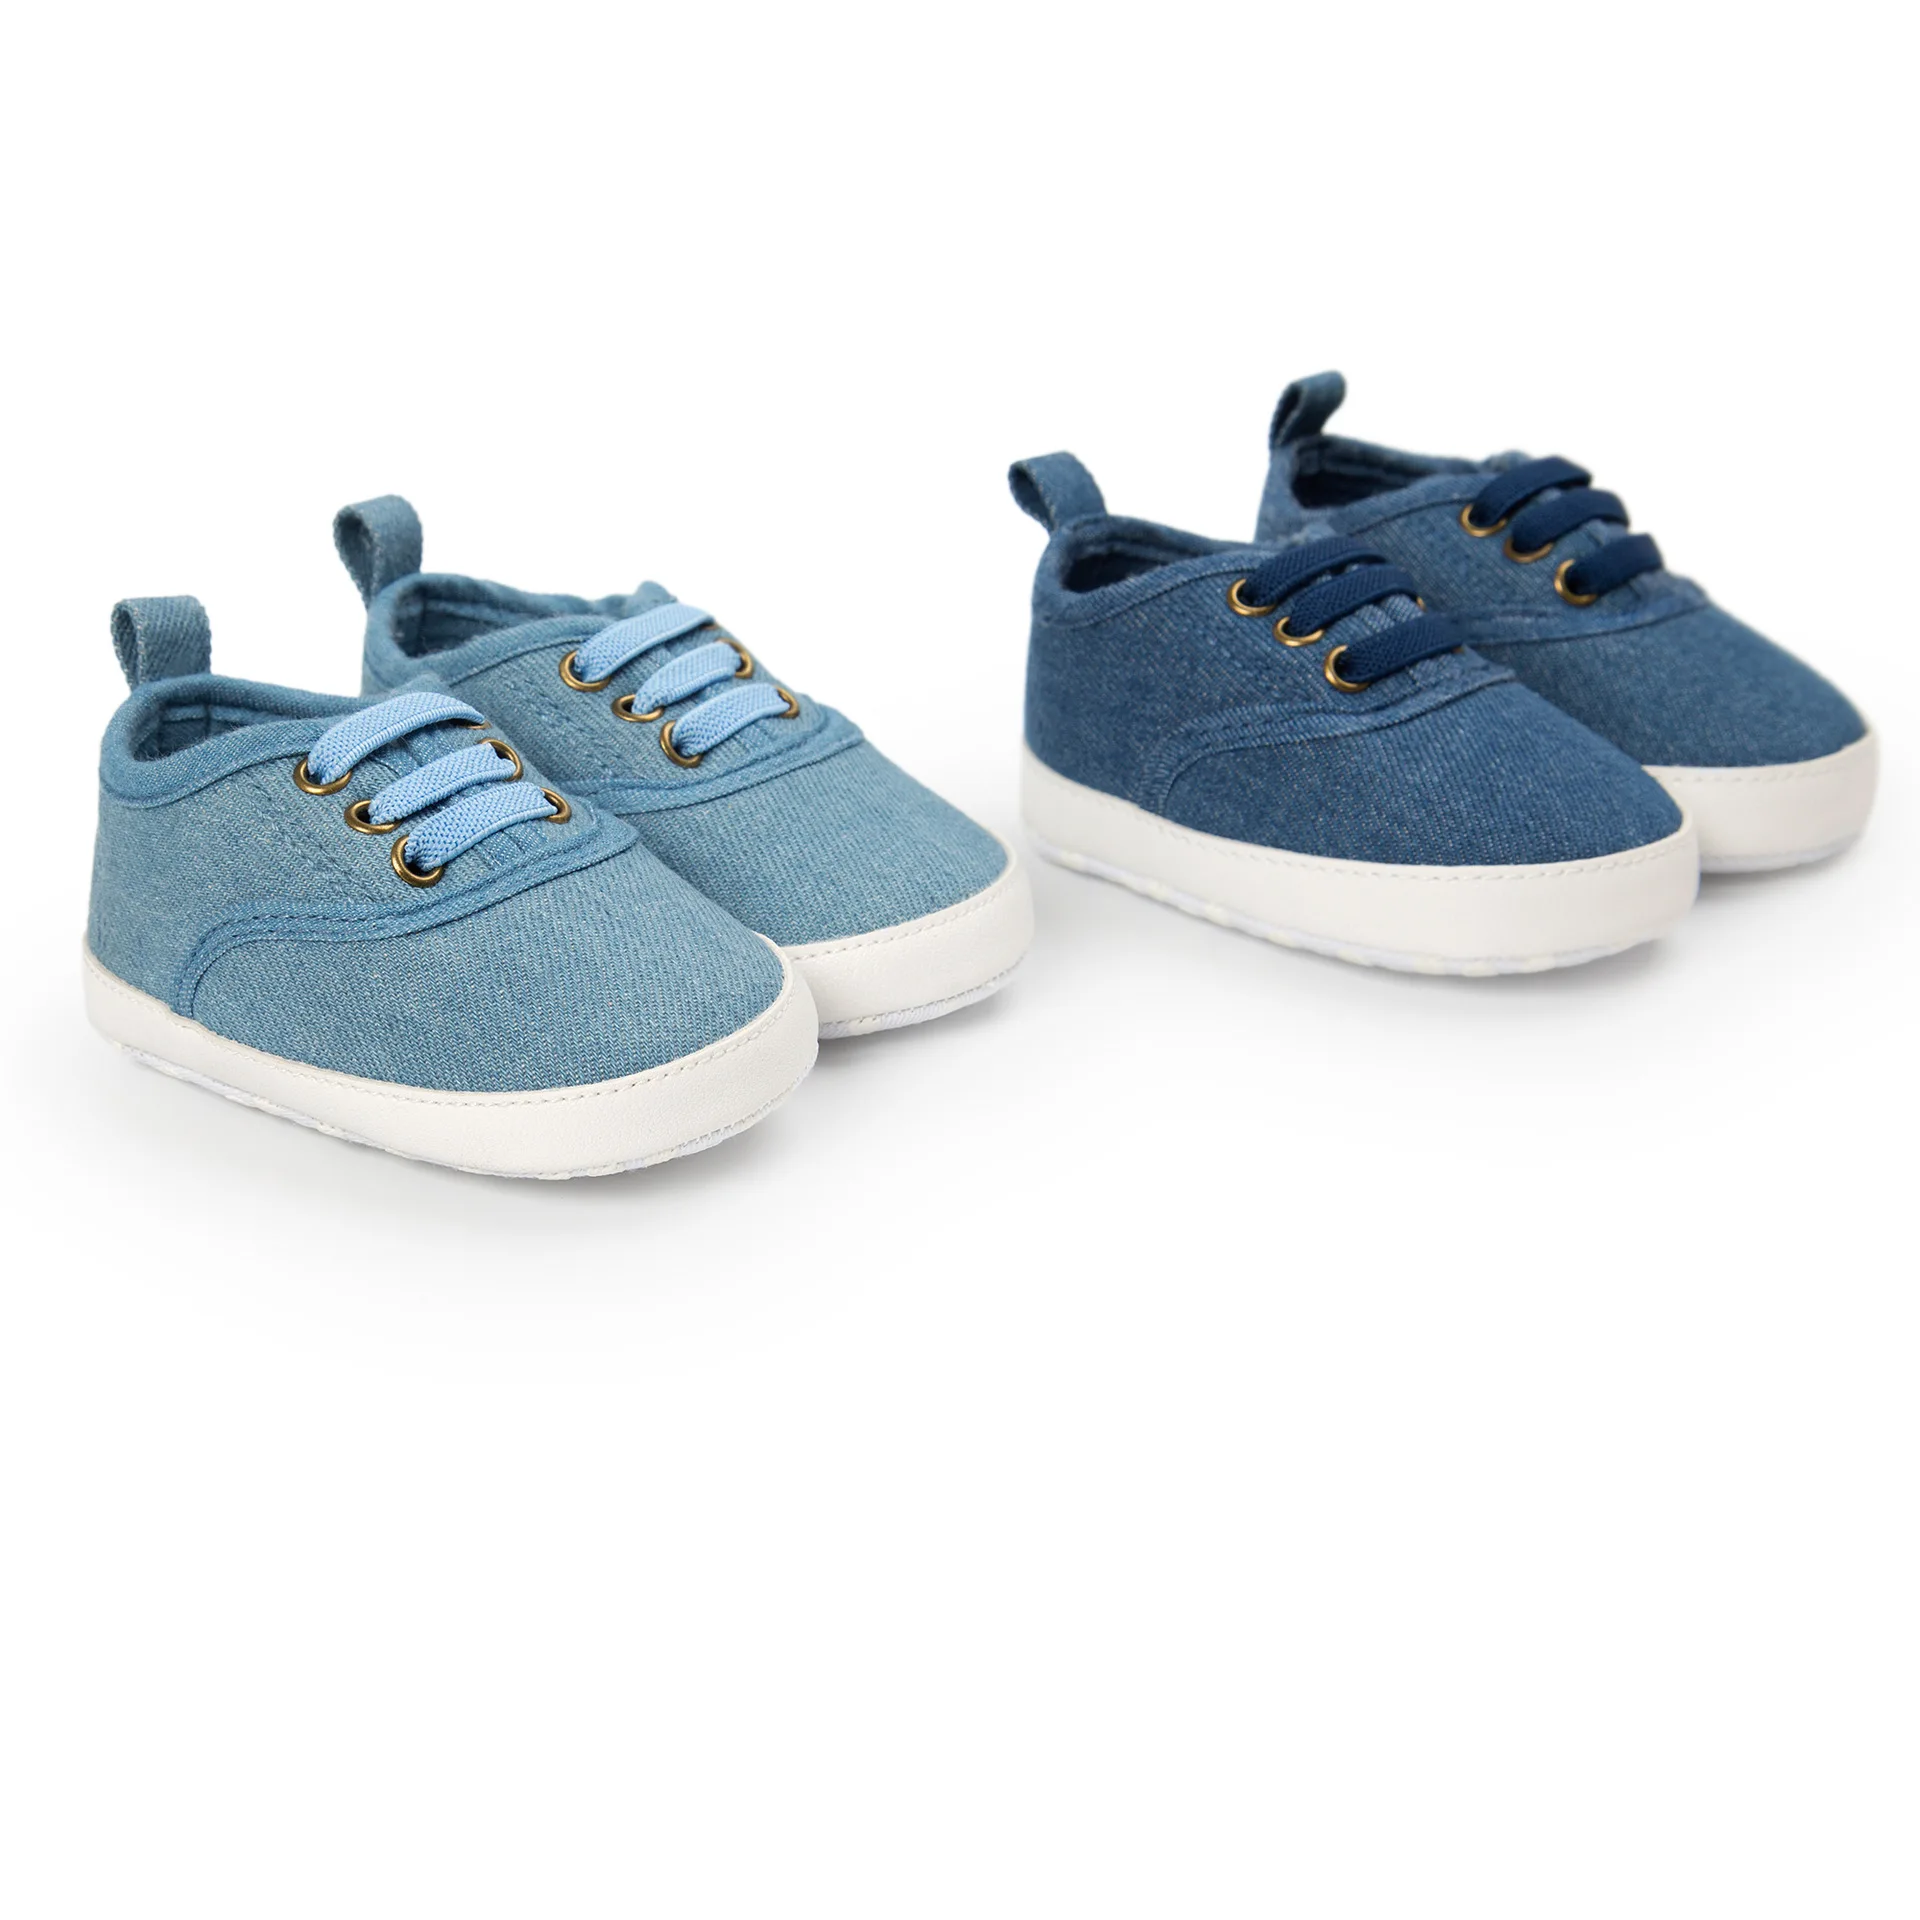 Carouri model cu dungi, pantofi pentru copii Primul pietoni Confortabil moale jos pantofi pentru copii transport gratuit